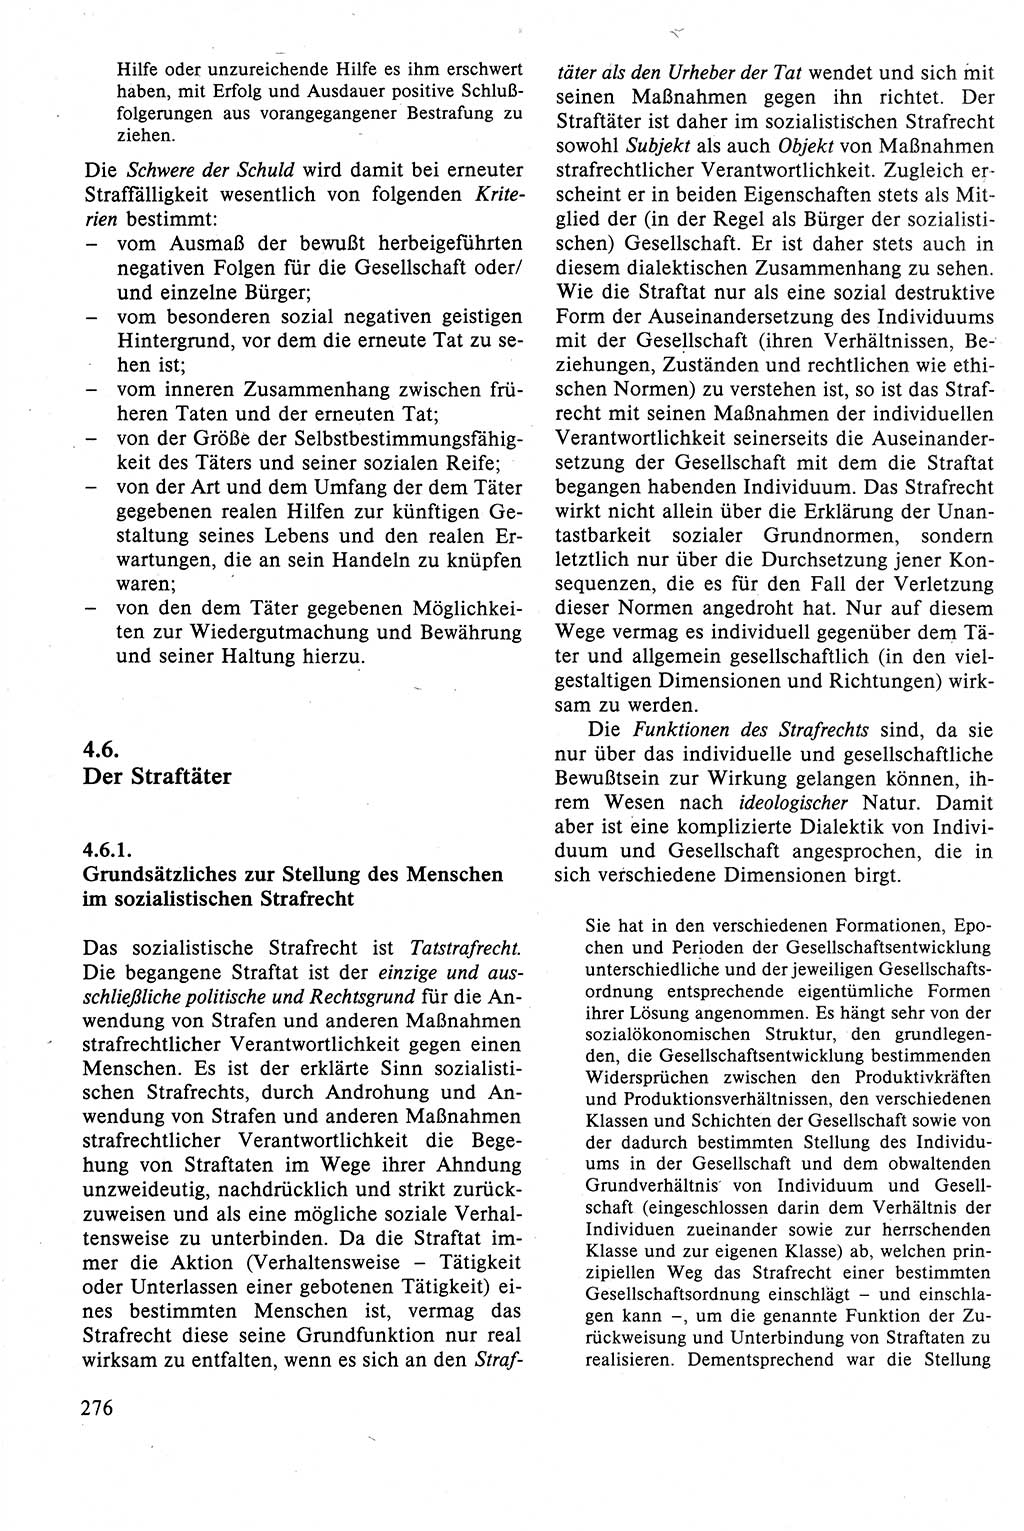 Strafrecht der DDR (Deutsche Demokratische Republik), Lehrbuch 1988, Seite 276 (Strafr. DDR Lb. 1988, S. 276)